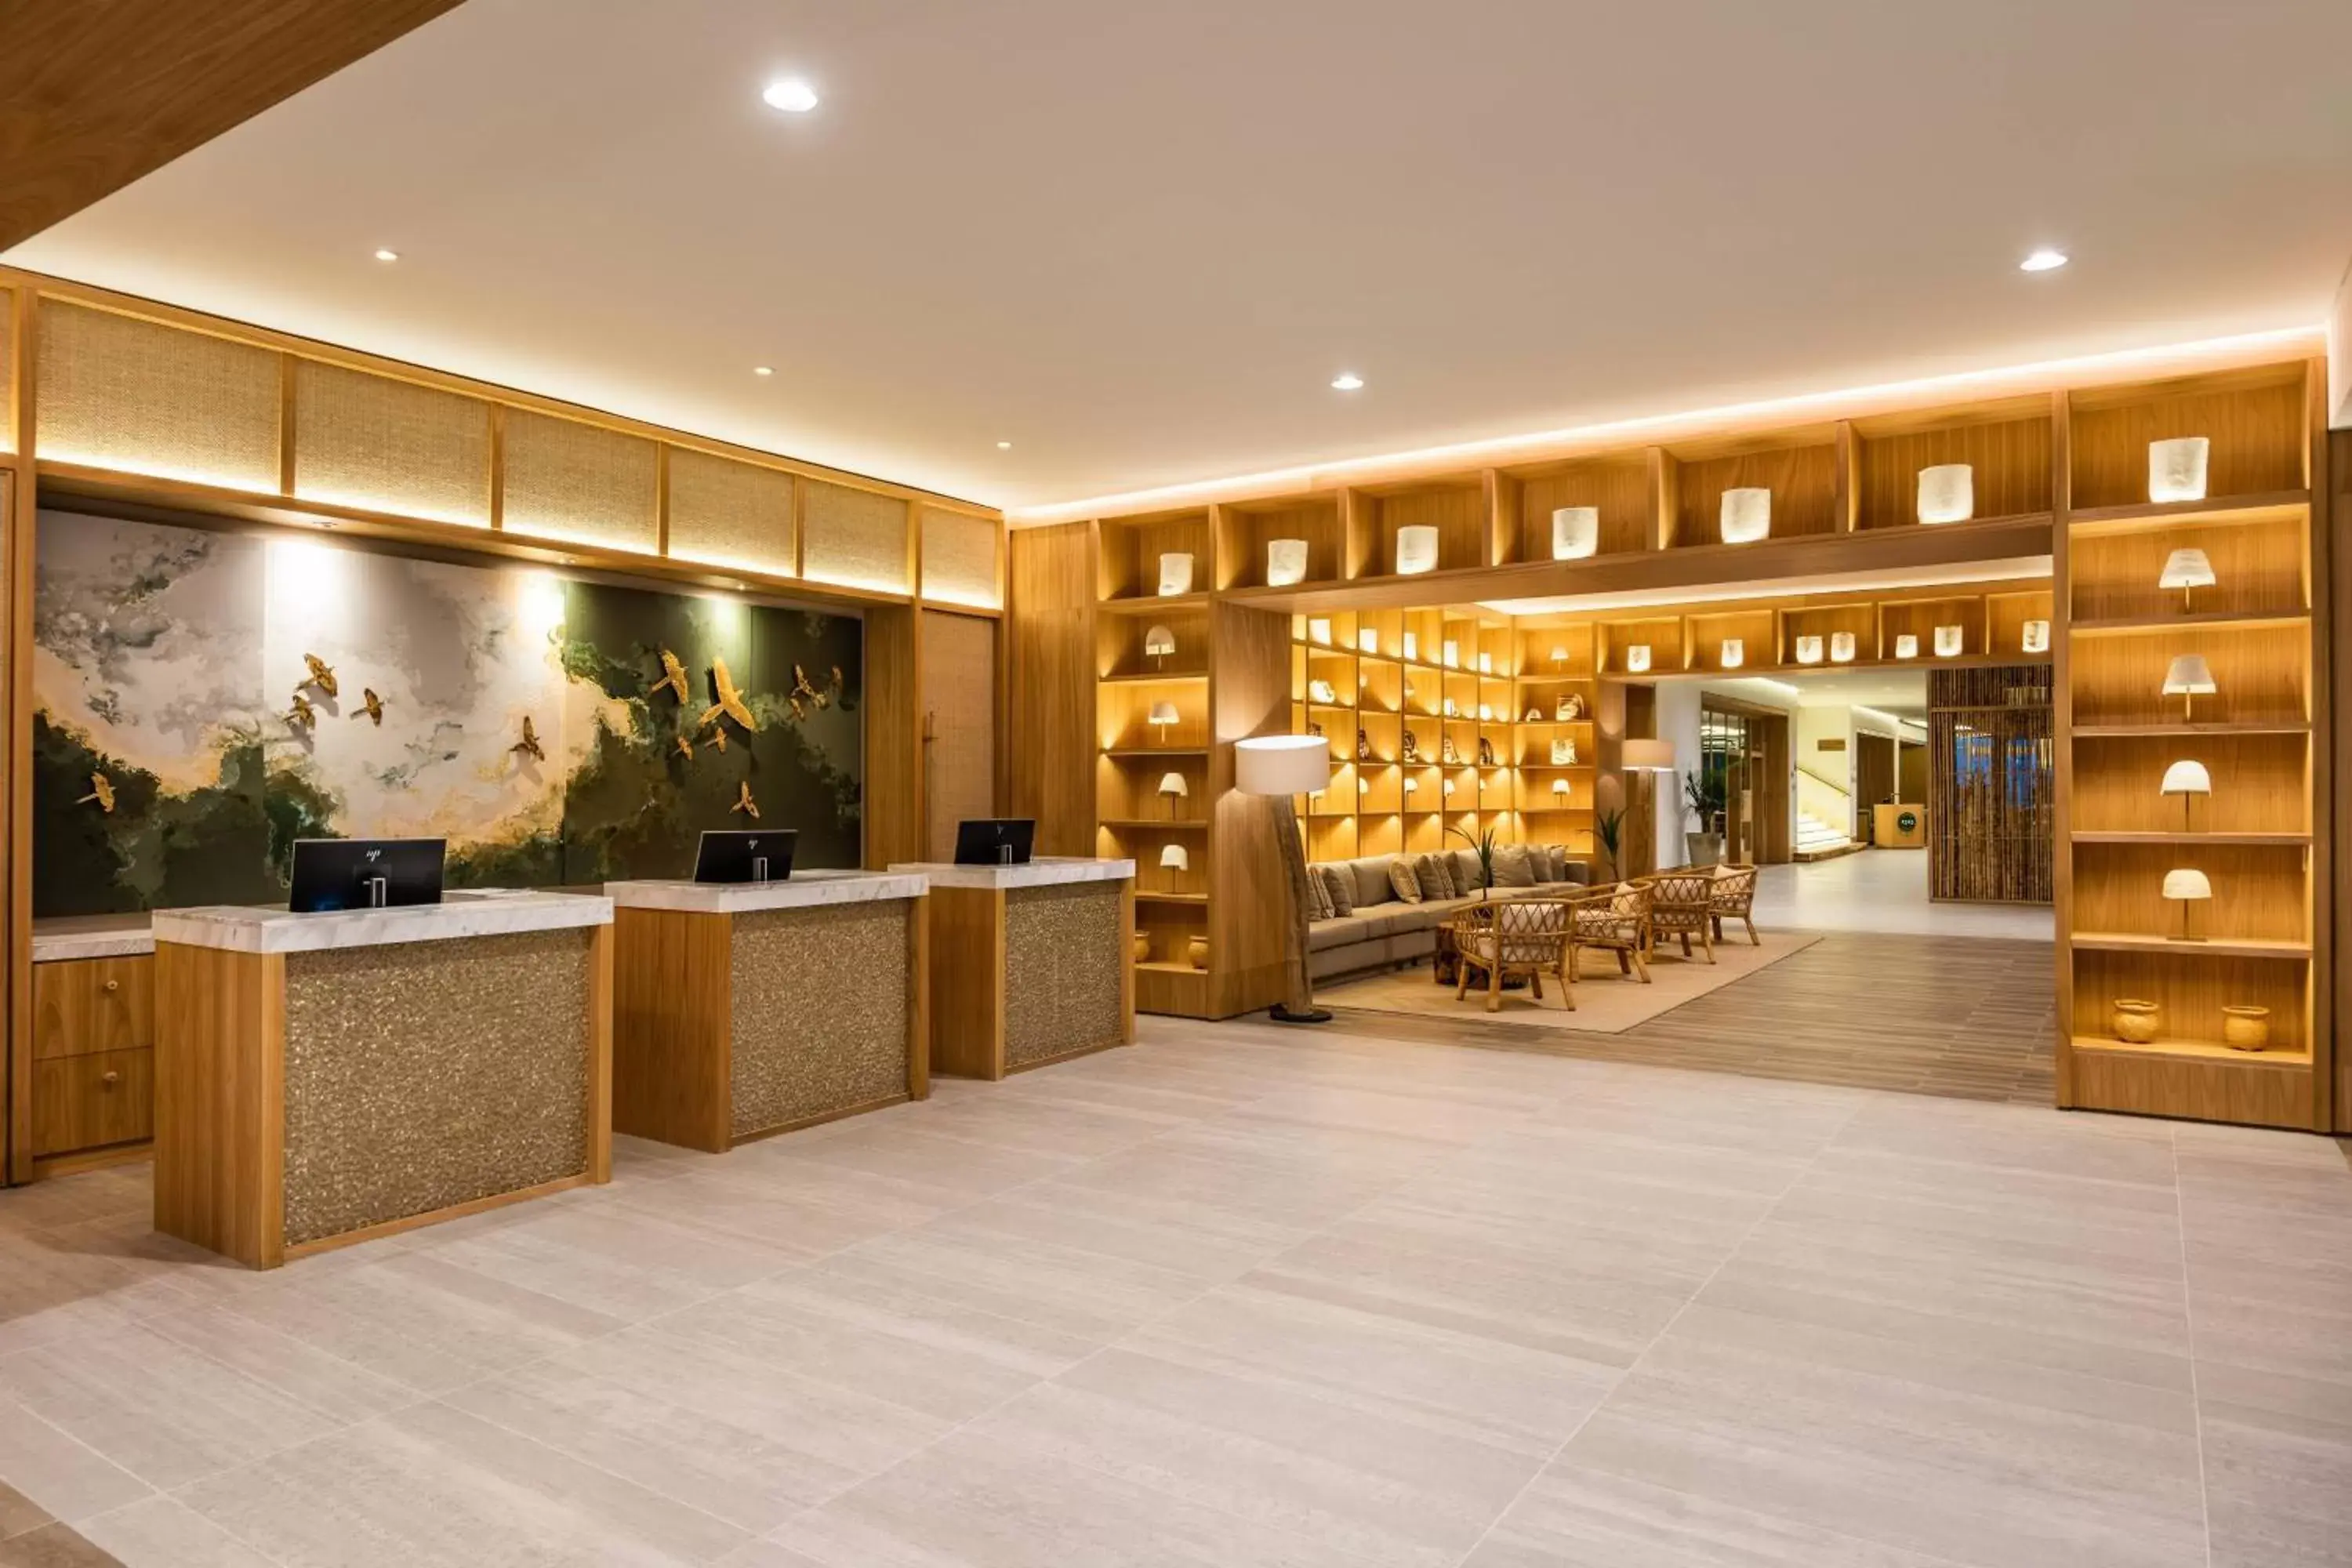 Lobby or reception in Santa Marta Marriott Resort Playa Dormida